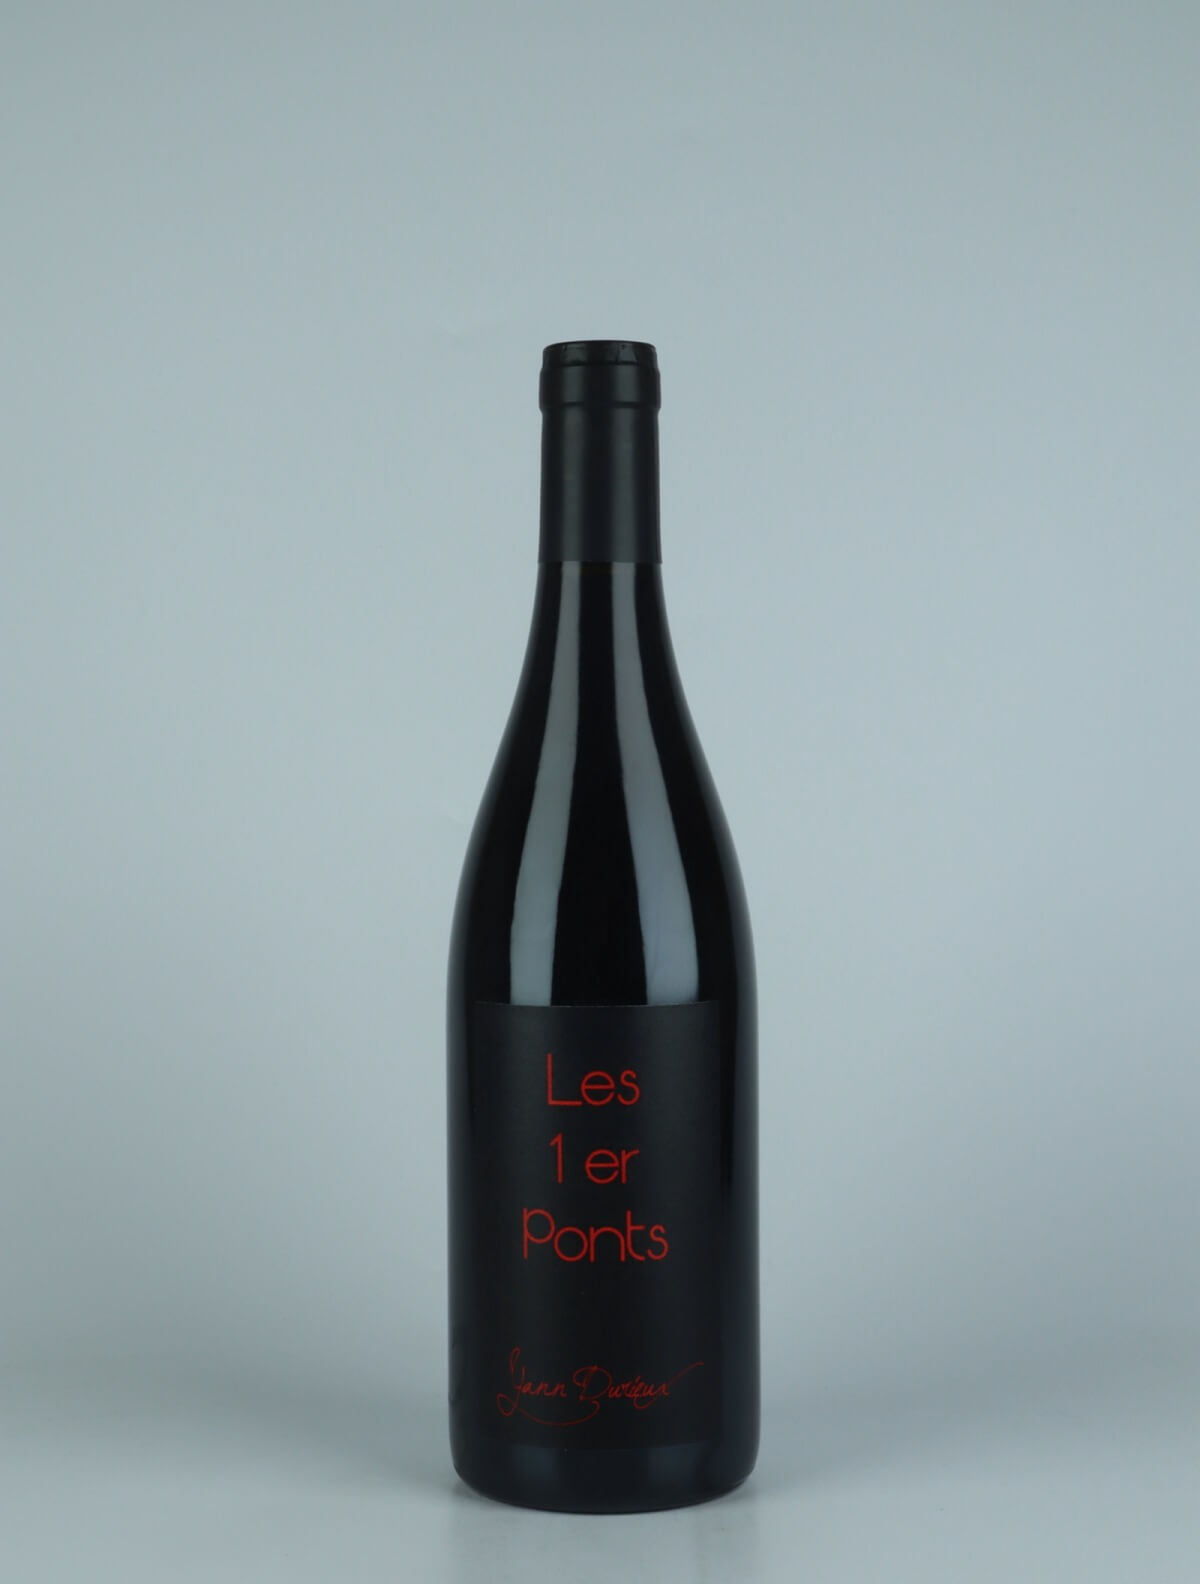 En flaske 2019 Les 1er Ponts Rødvin fra Yann Durieux, Bourgogne i Frankrig